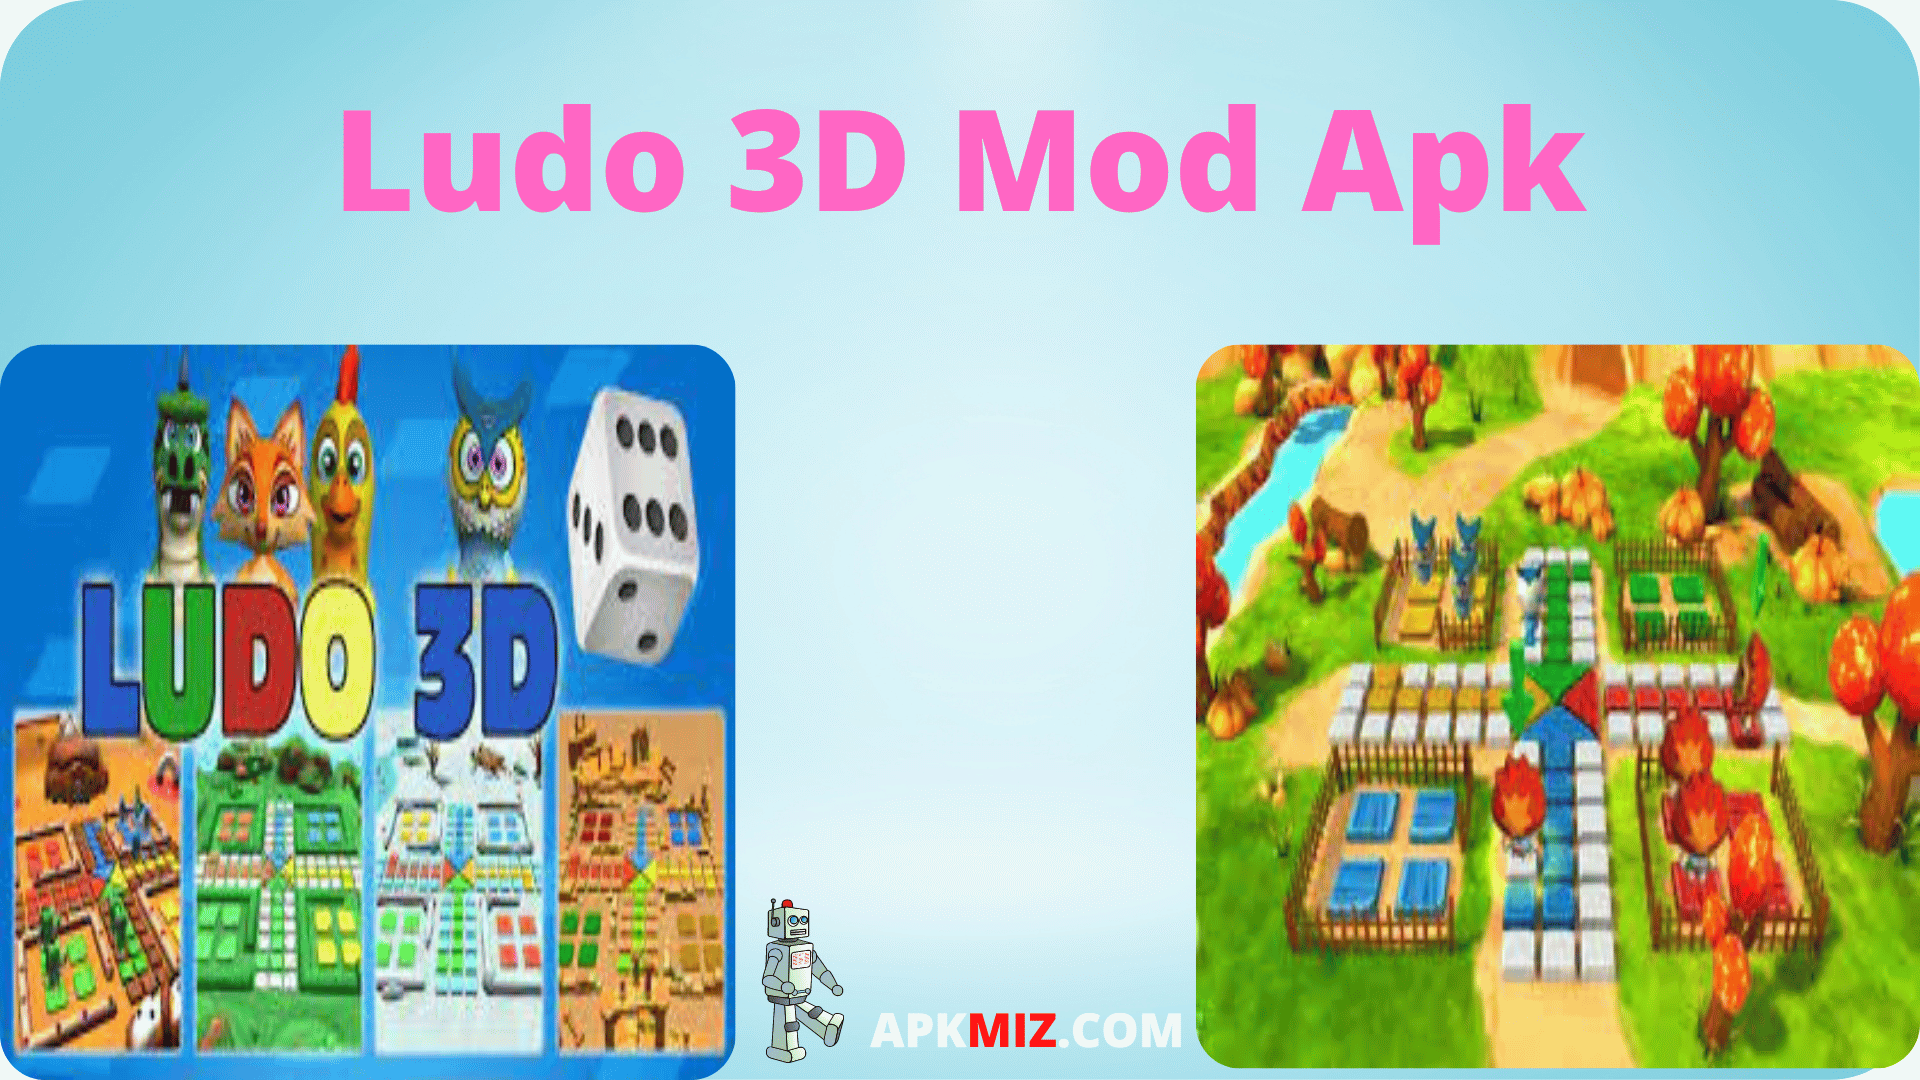 Ludo 3D Mod Apk